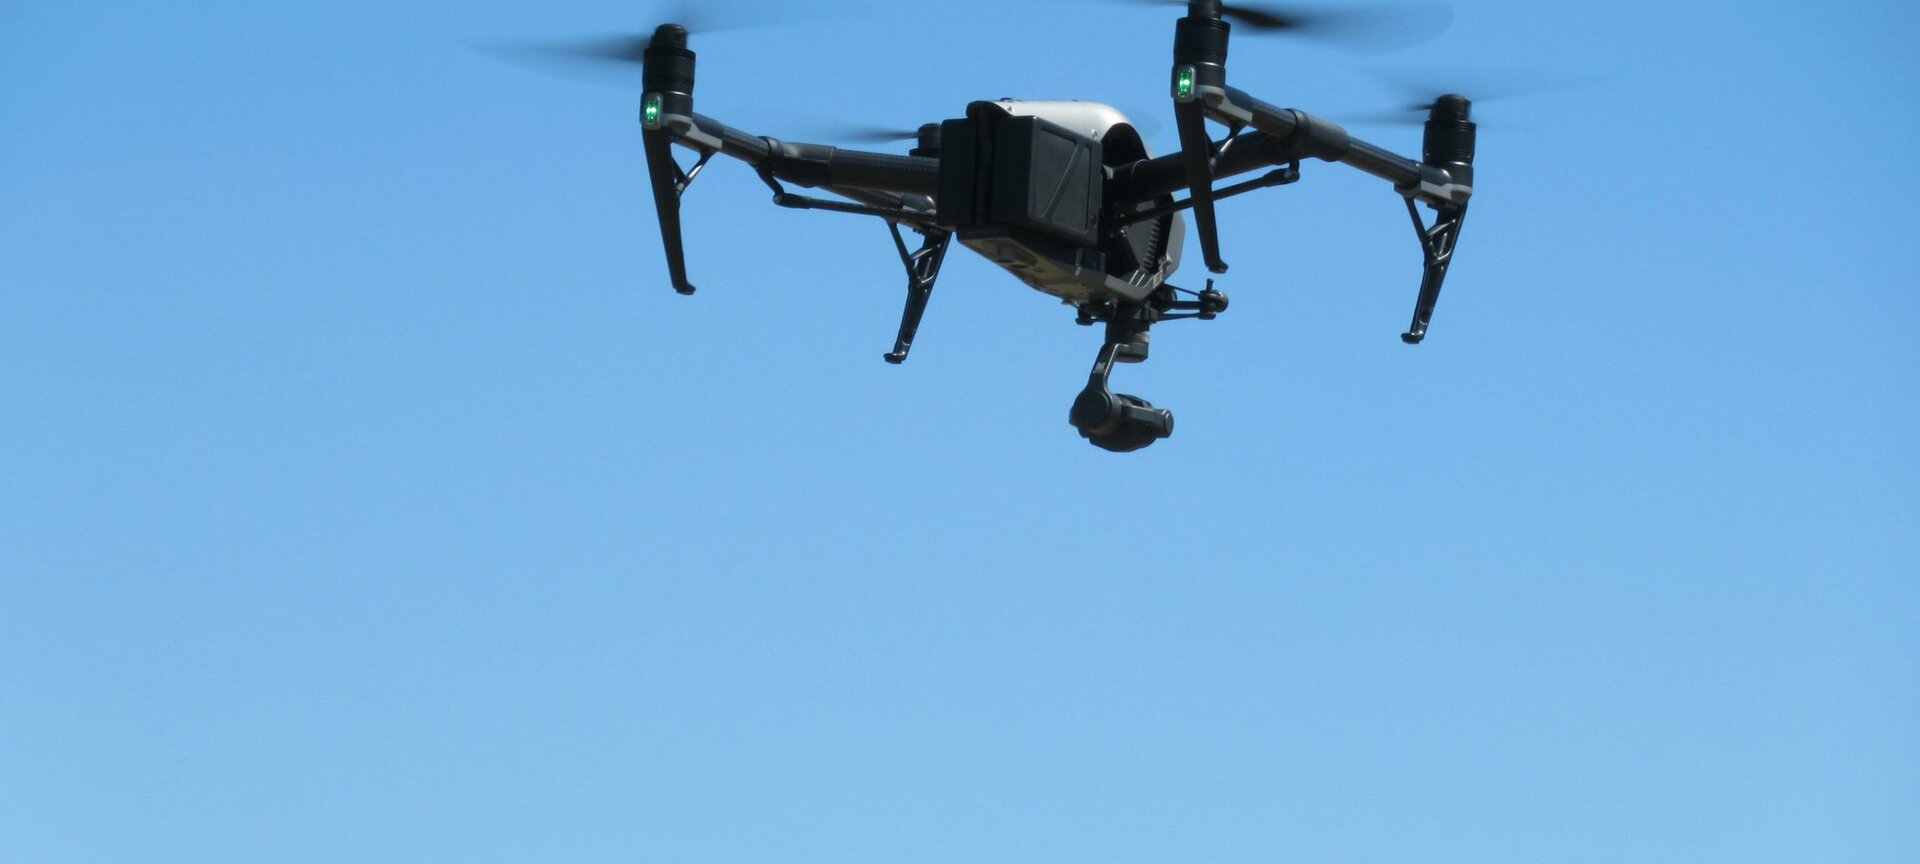 Vlieg met professionele drones - Alle type drones komen aan bod : kleine en grote